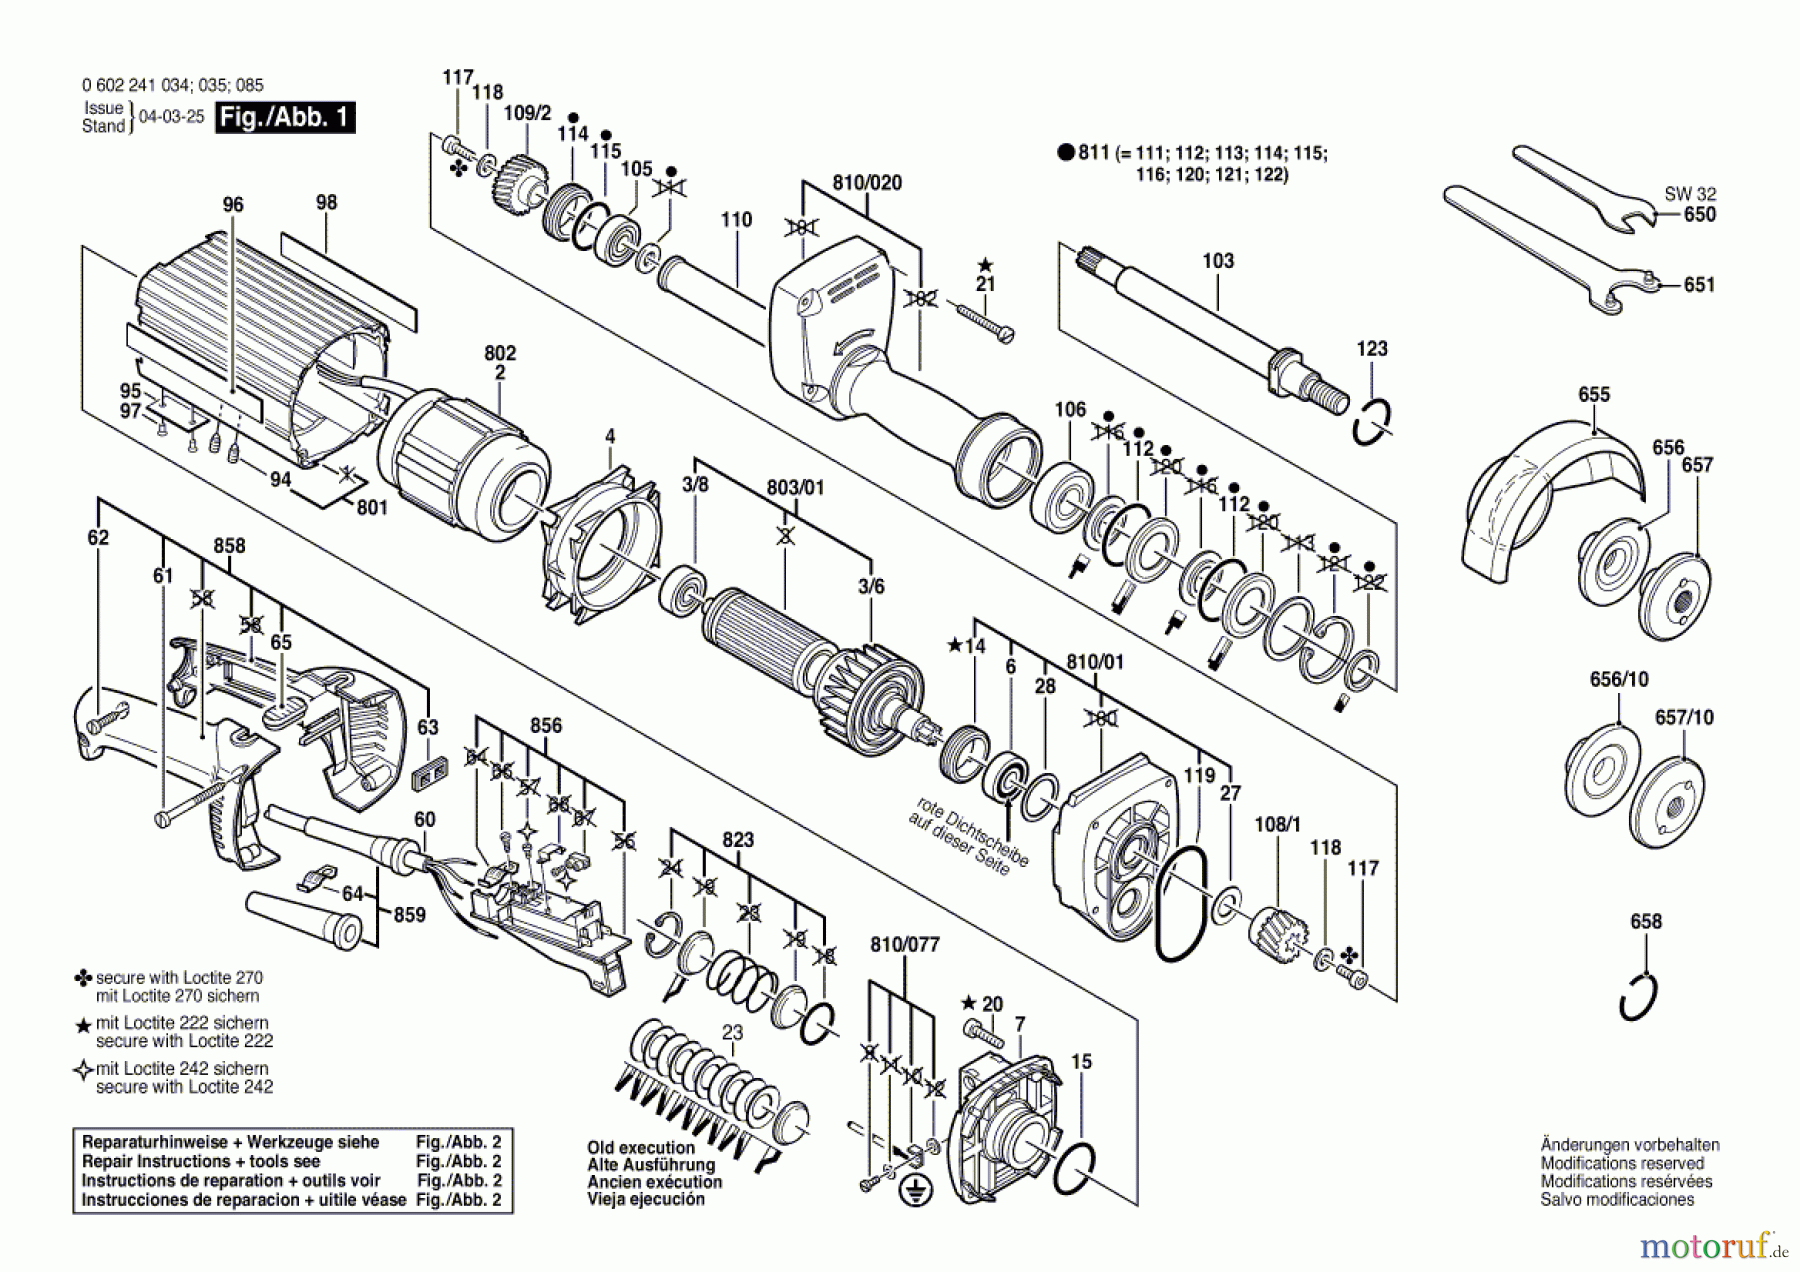  Bosch Werkzeug Hf-Geradschleifer 2 239 Seite 1